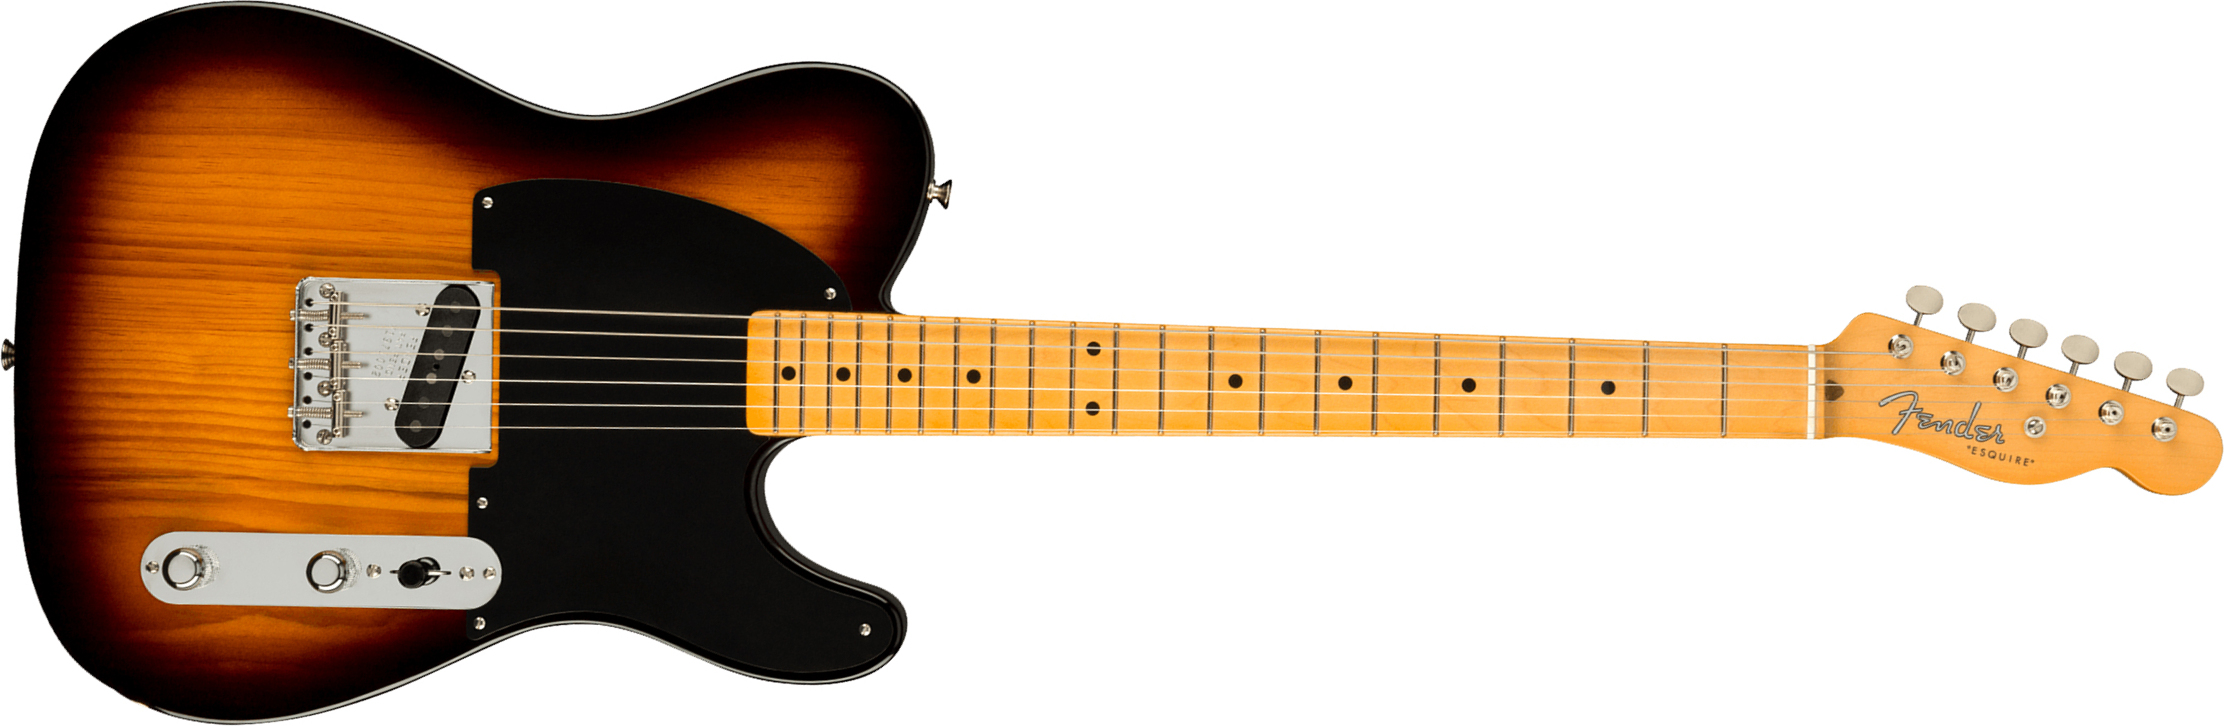 Fender Esquire/tele 70th Anniversary Usa Mn - 2-color Sunburst - E-Gitarre in Teleform - Main picture